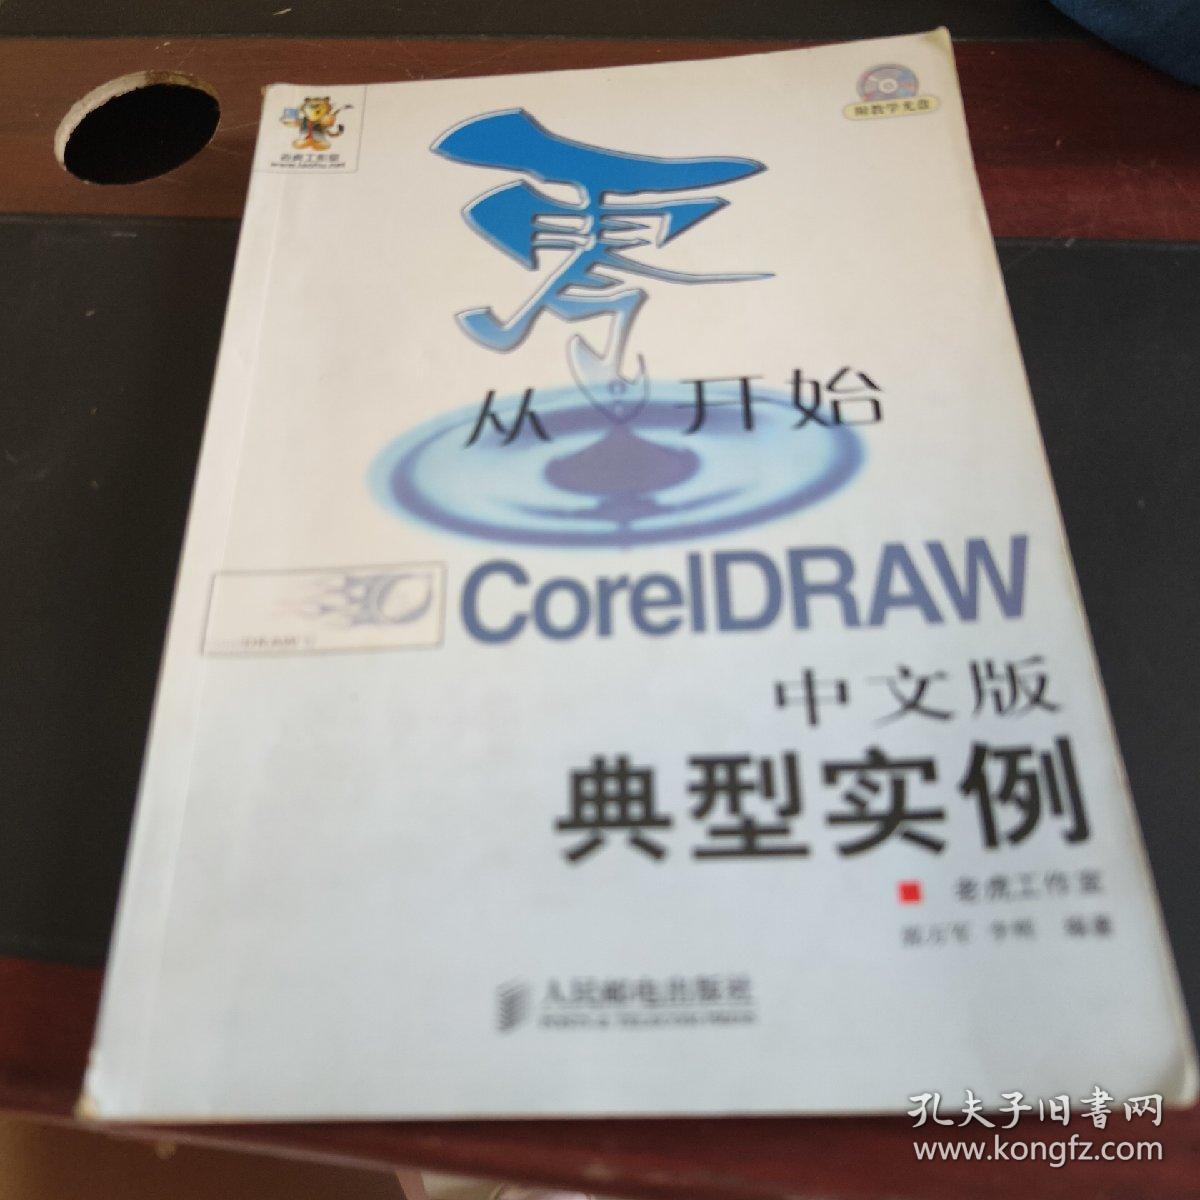 从零开始——CorelDRAW中文版典型实例